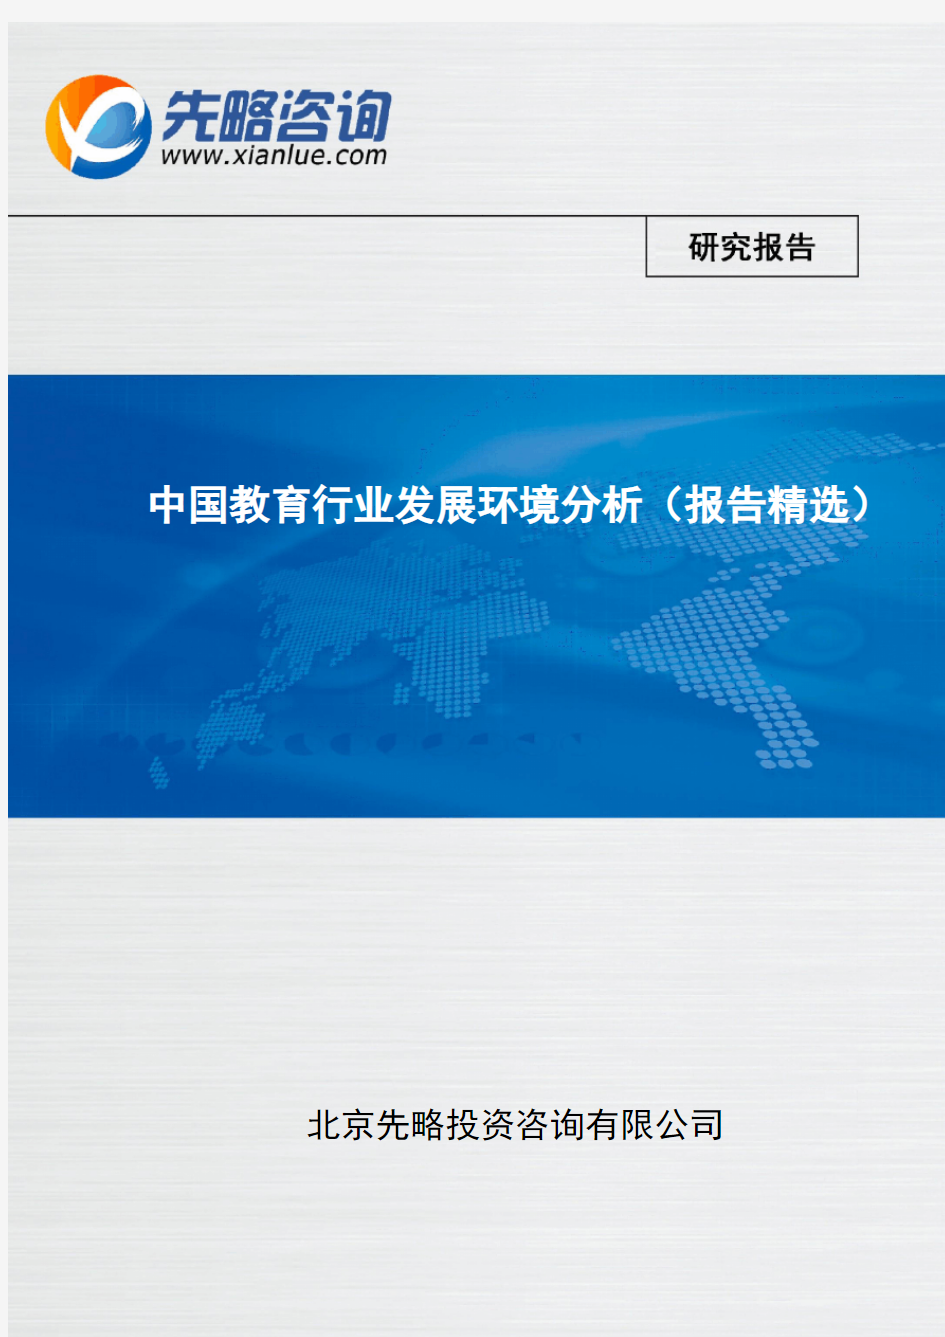 中国教育行业发展环境分析(报告精选)